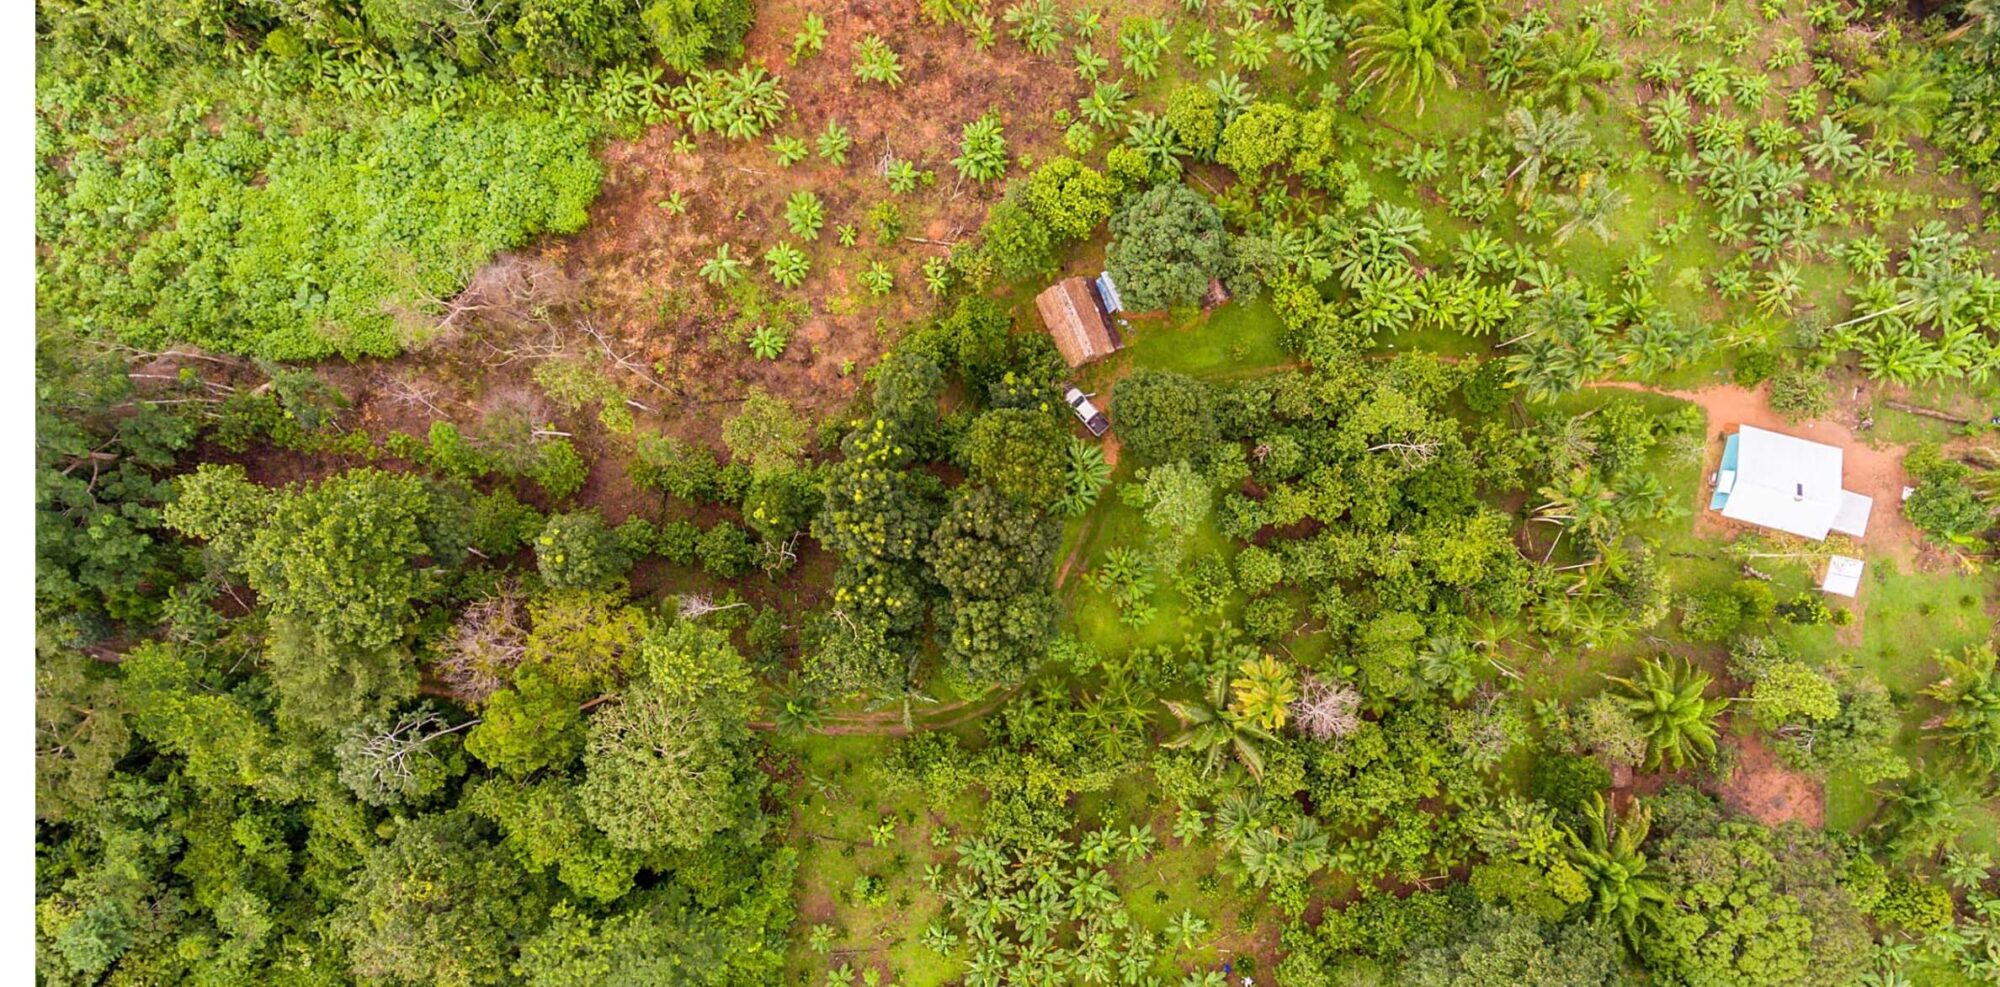 Madagascar nature aerial view